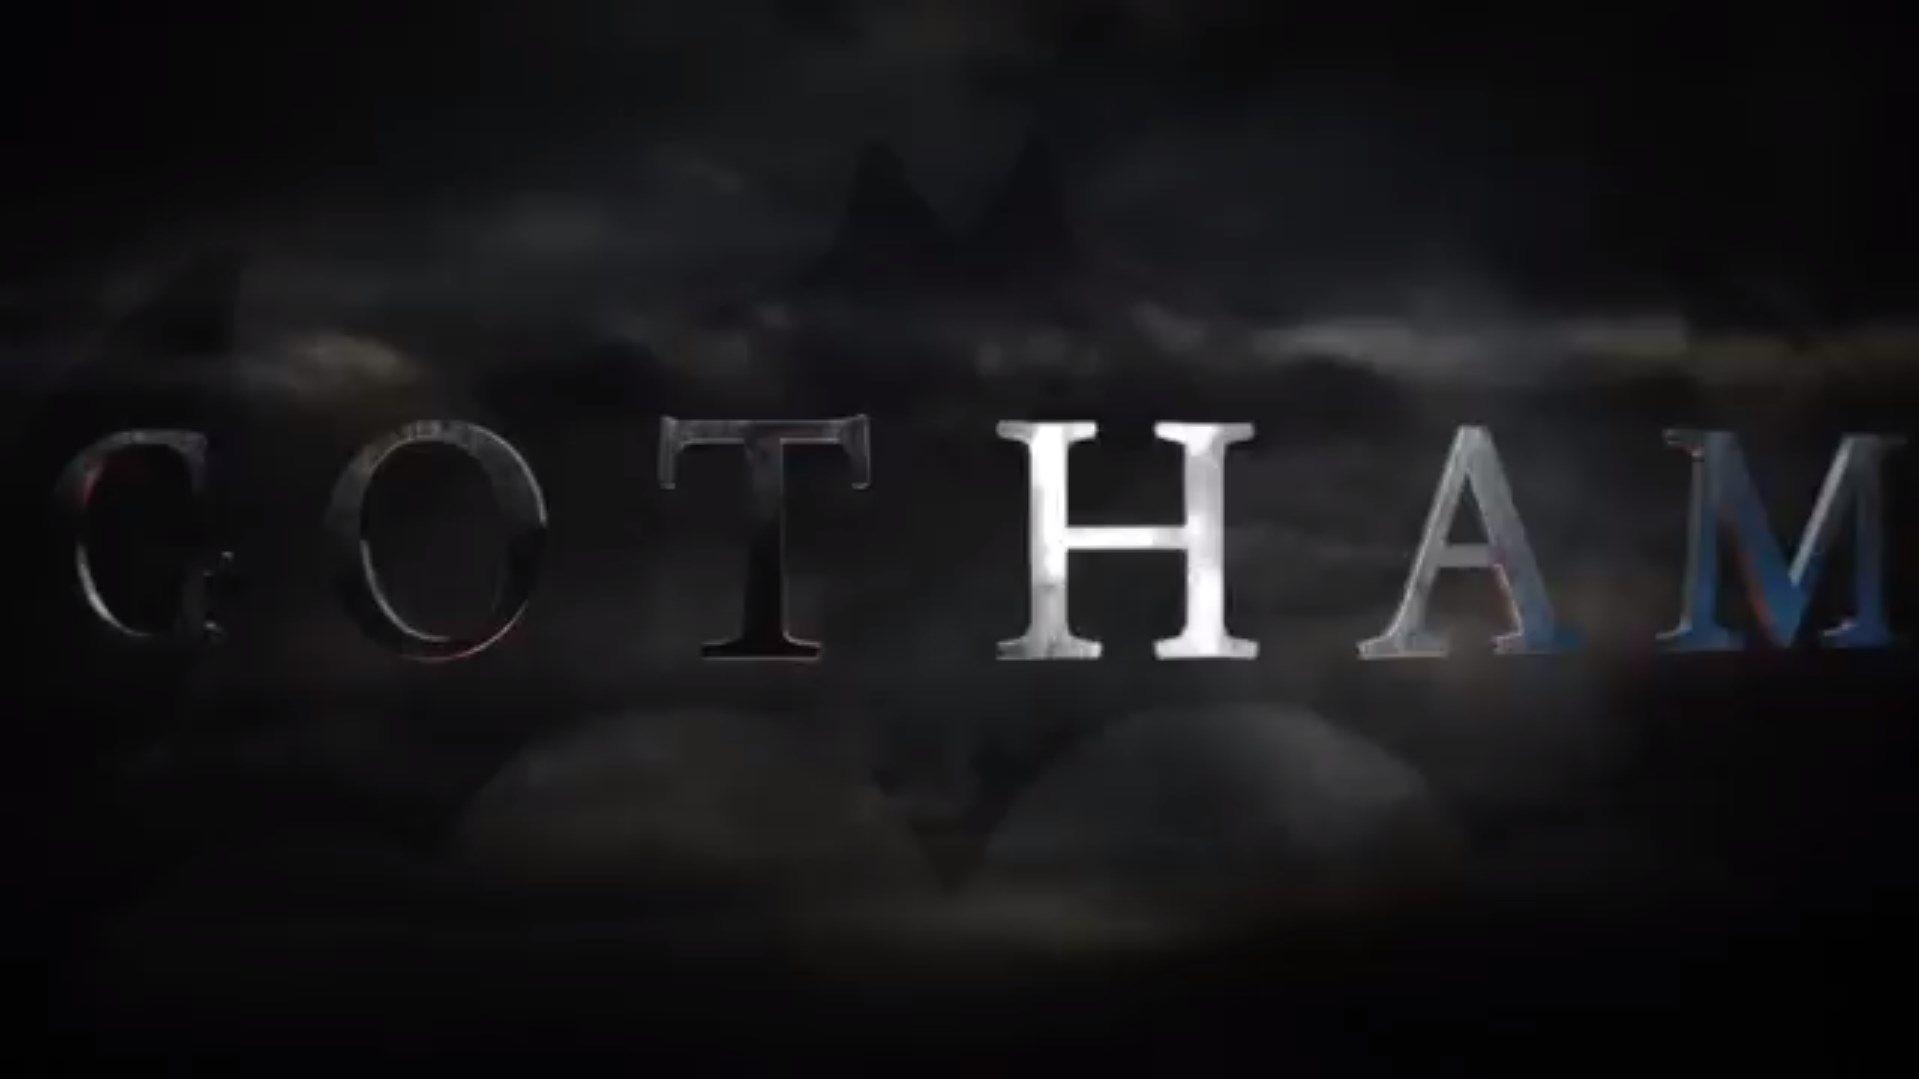 Gotham Logo - Gotham series finale logo with the batman symbol